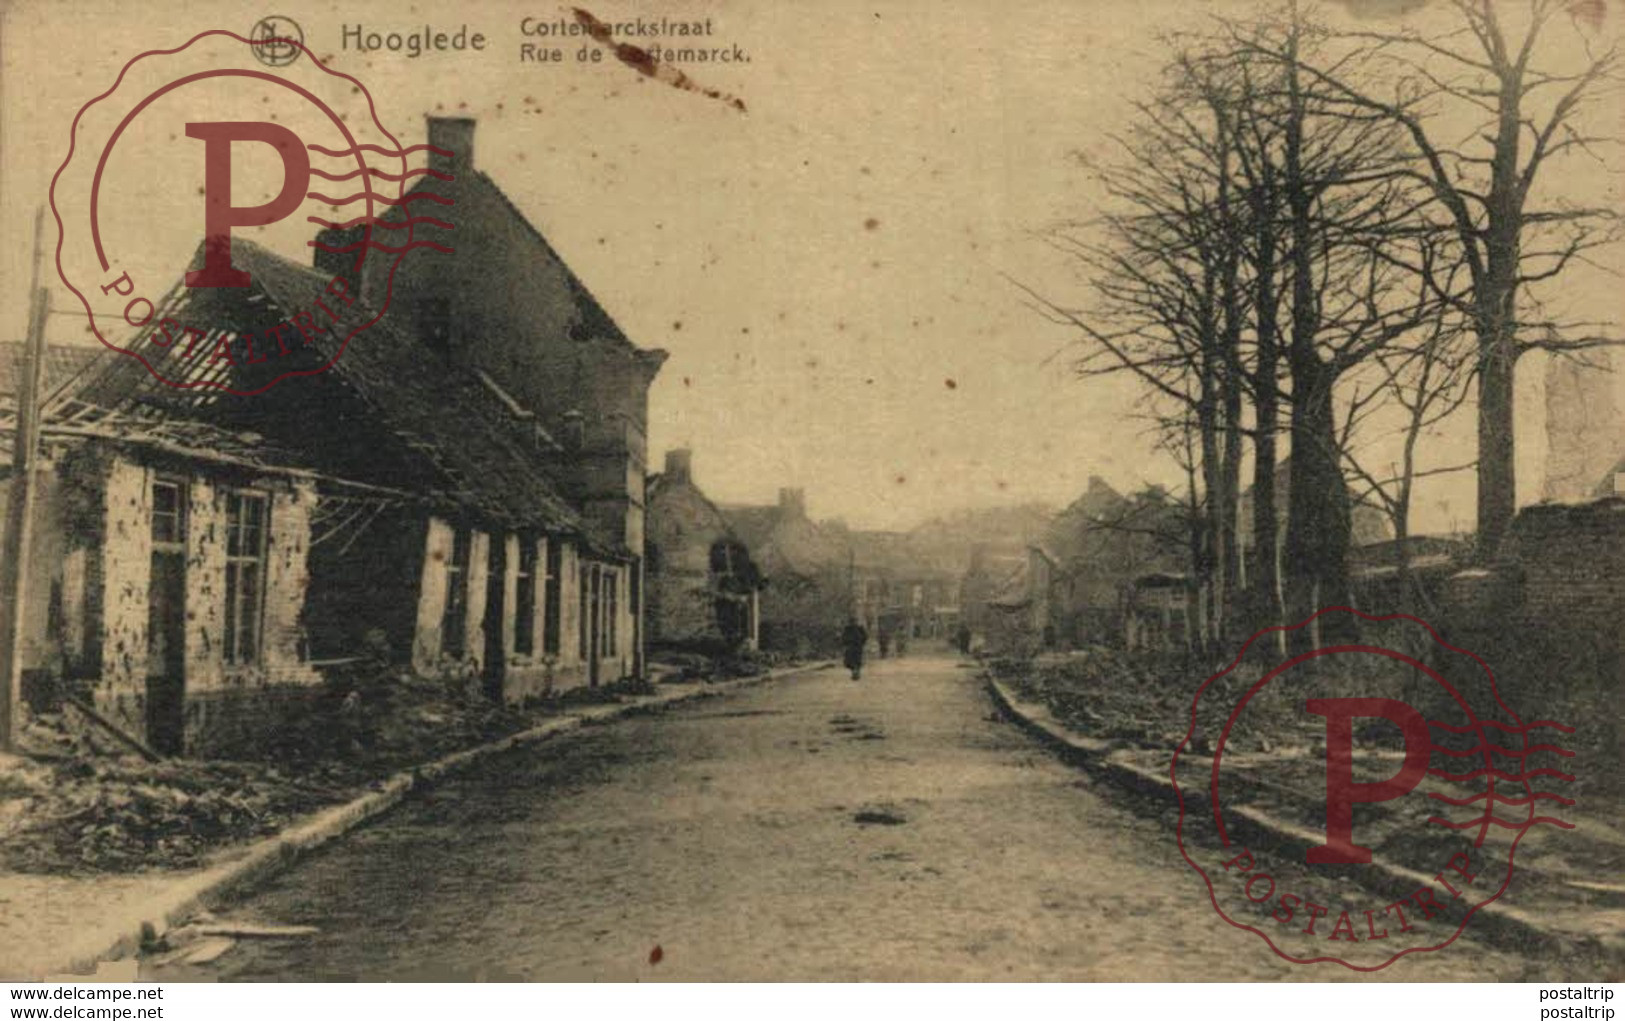 Hooglede  Cortemarckstraat  RUE DE CORTEMARCK  BELGIQUE 1914/15 WWI WWICOLLECTION - Hooglede